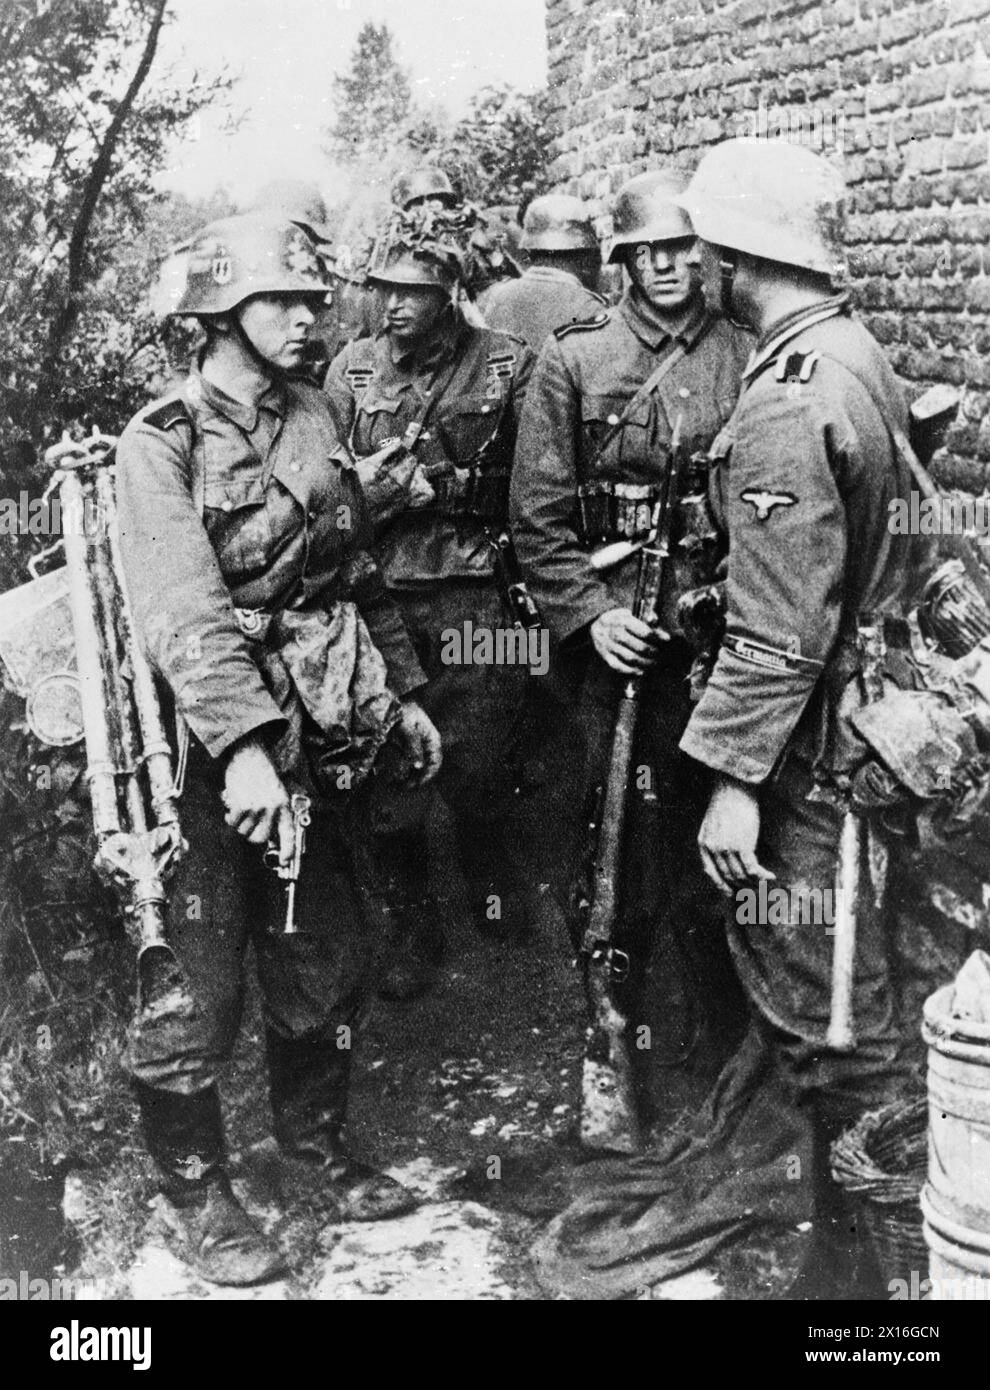 LES SCHUTZSTAFFELN (SS) - Waffen SS troupes du régiment 'Germania'. Date inconnue Armée allemande (troisième Reich), Schutzstaffel (SS) Banque D'Images